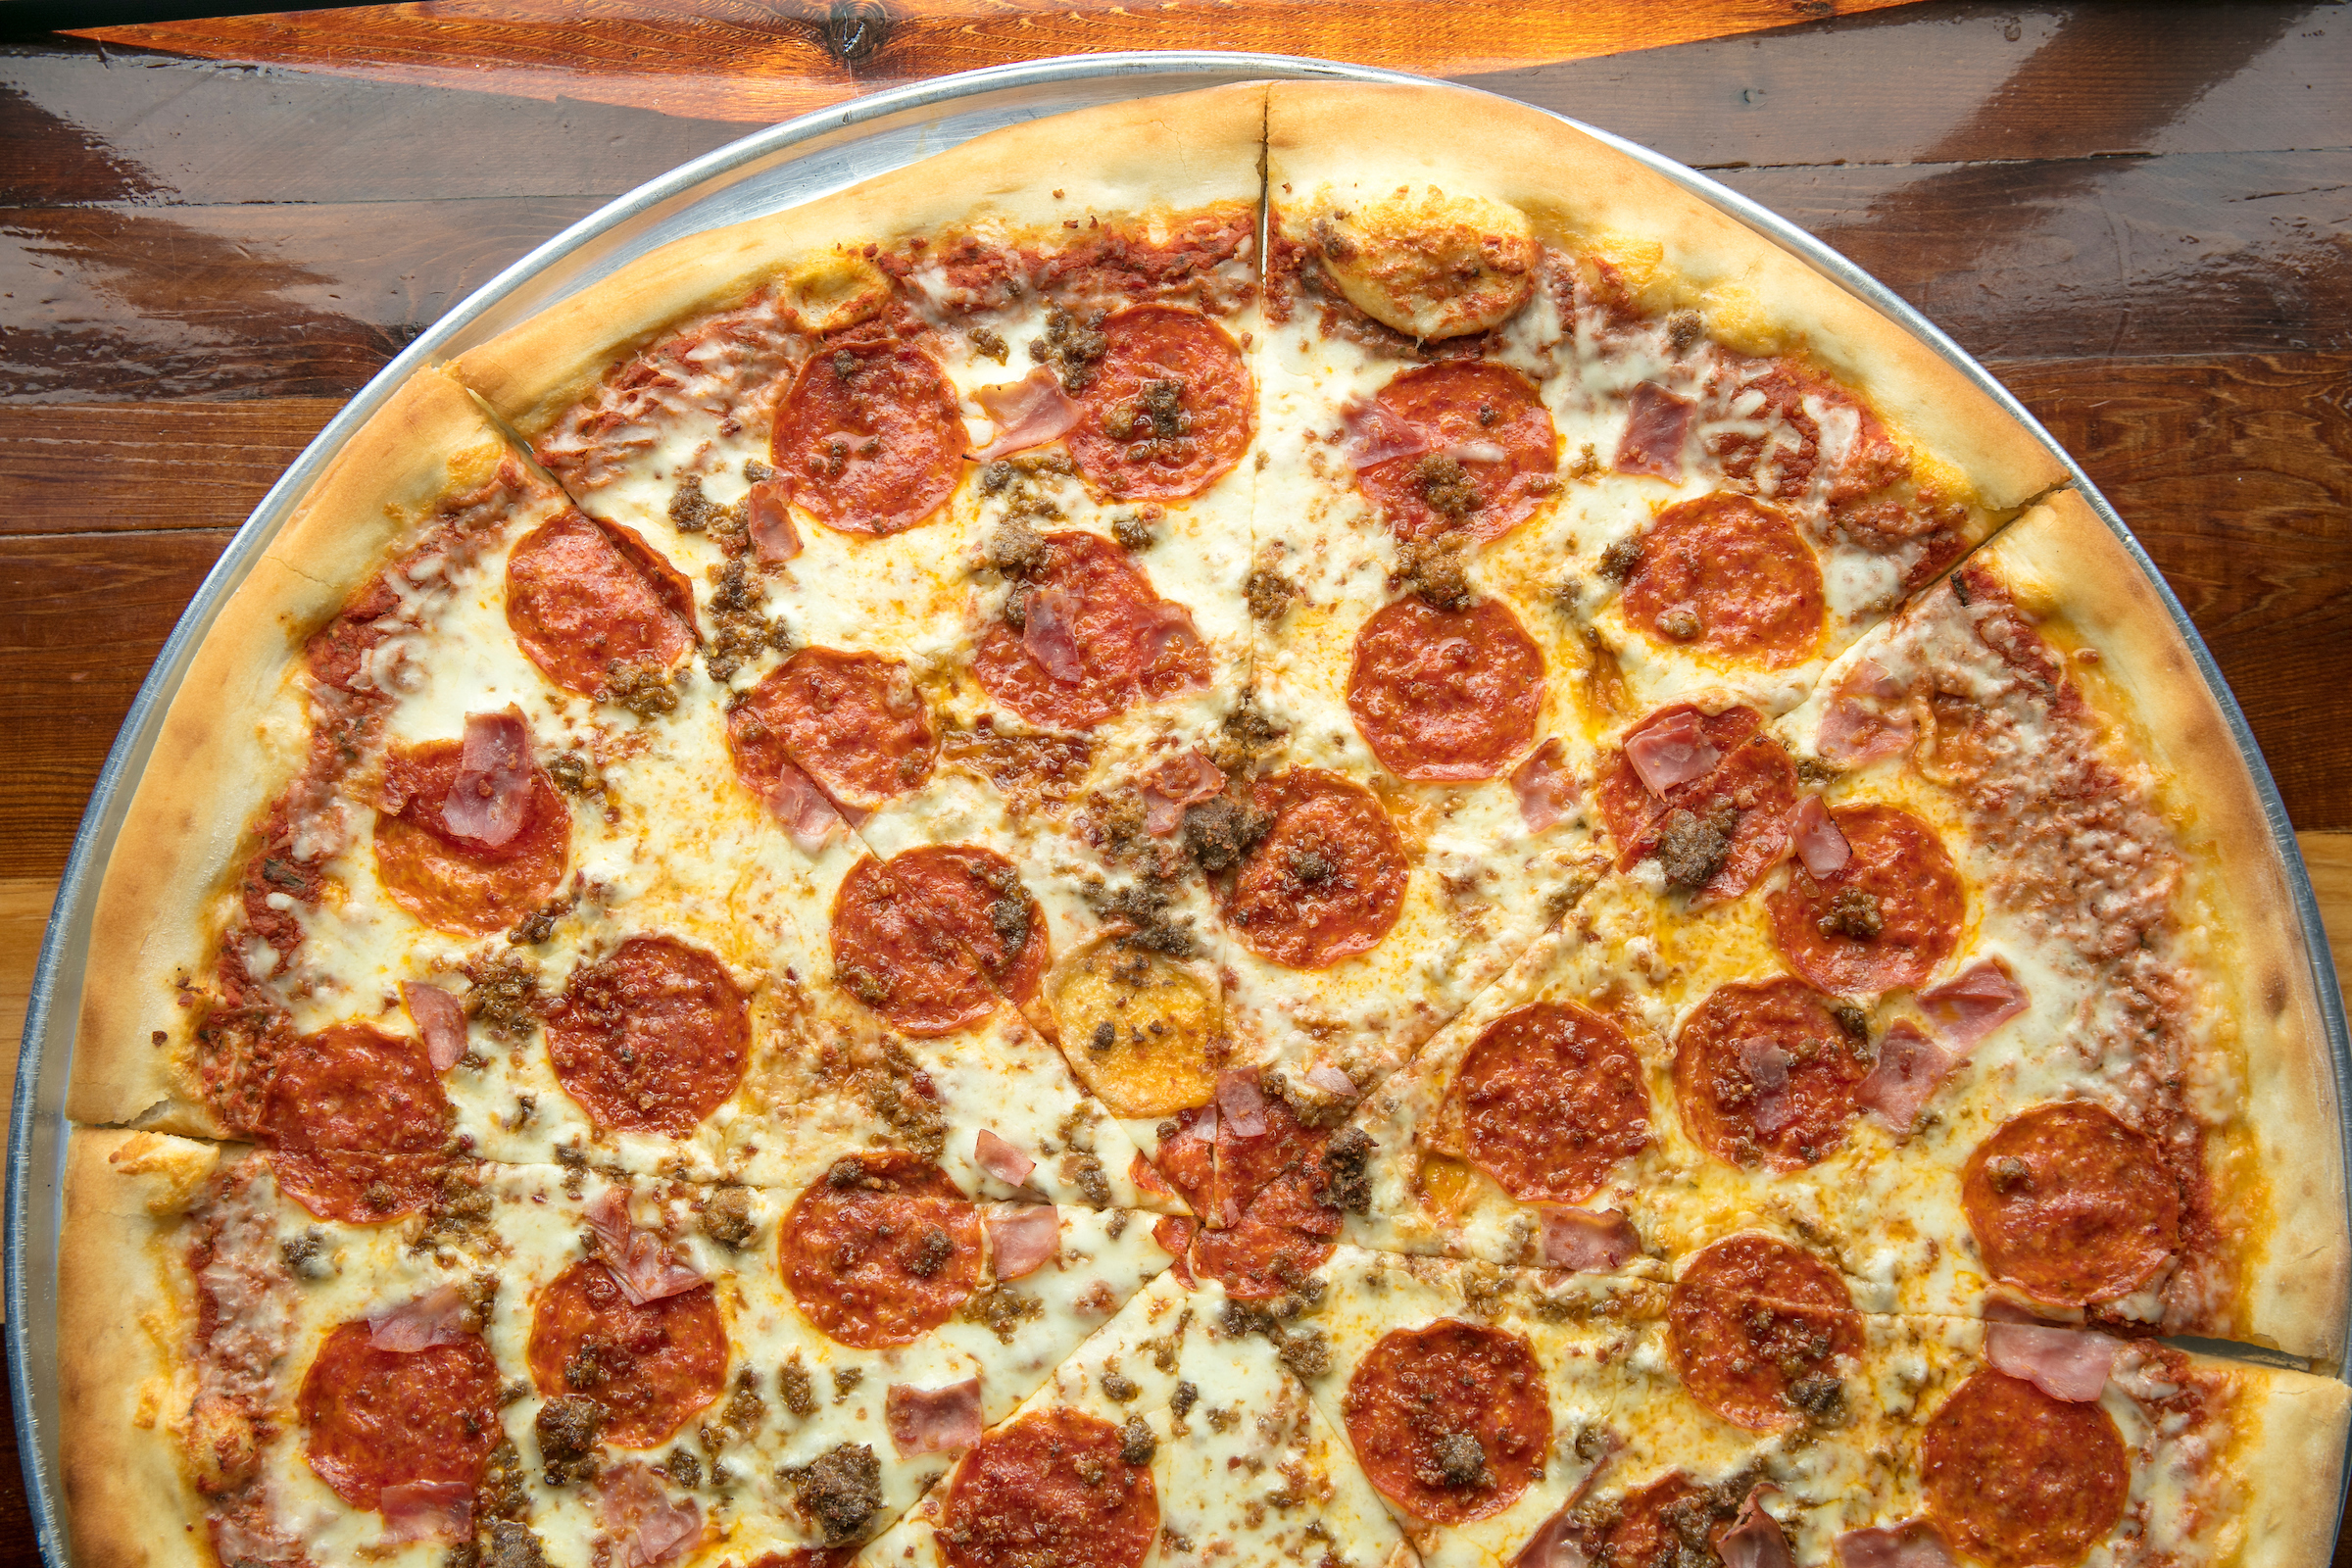 Fat Boy’s Pizza pepperoni pizza.